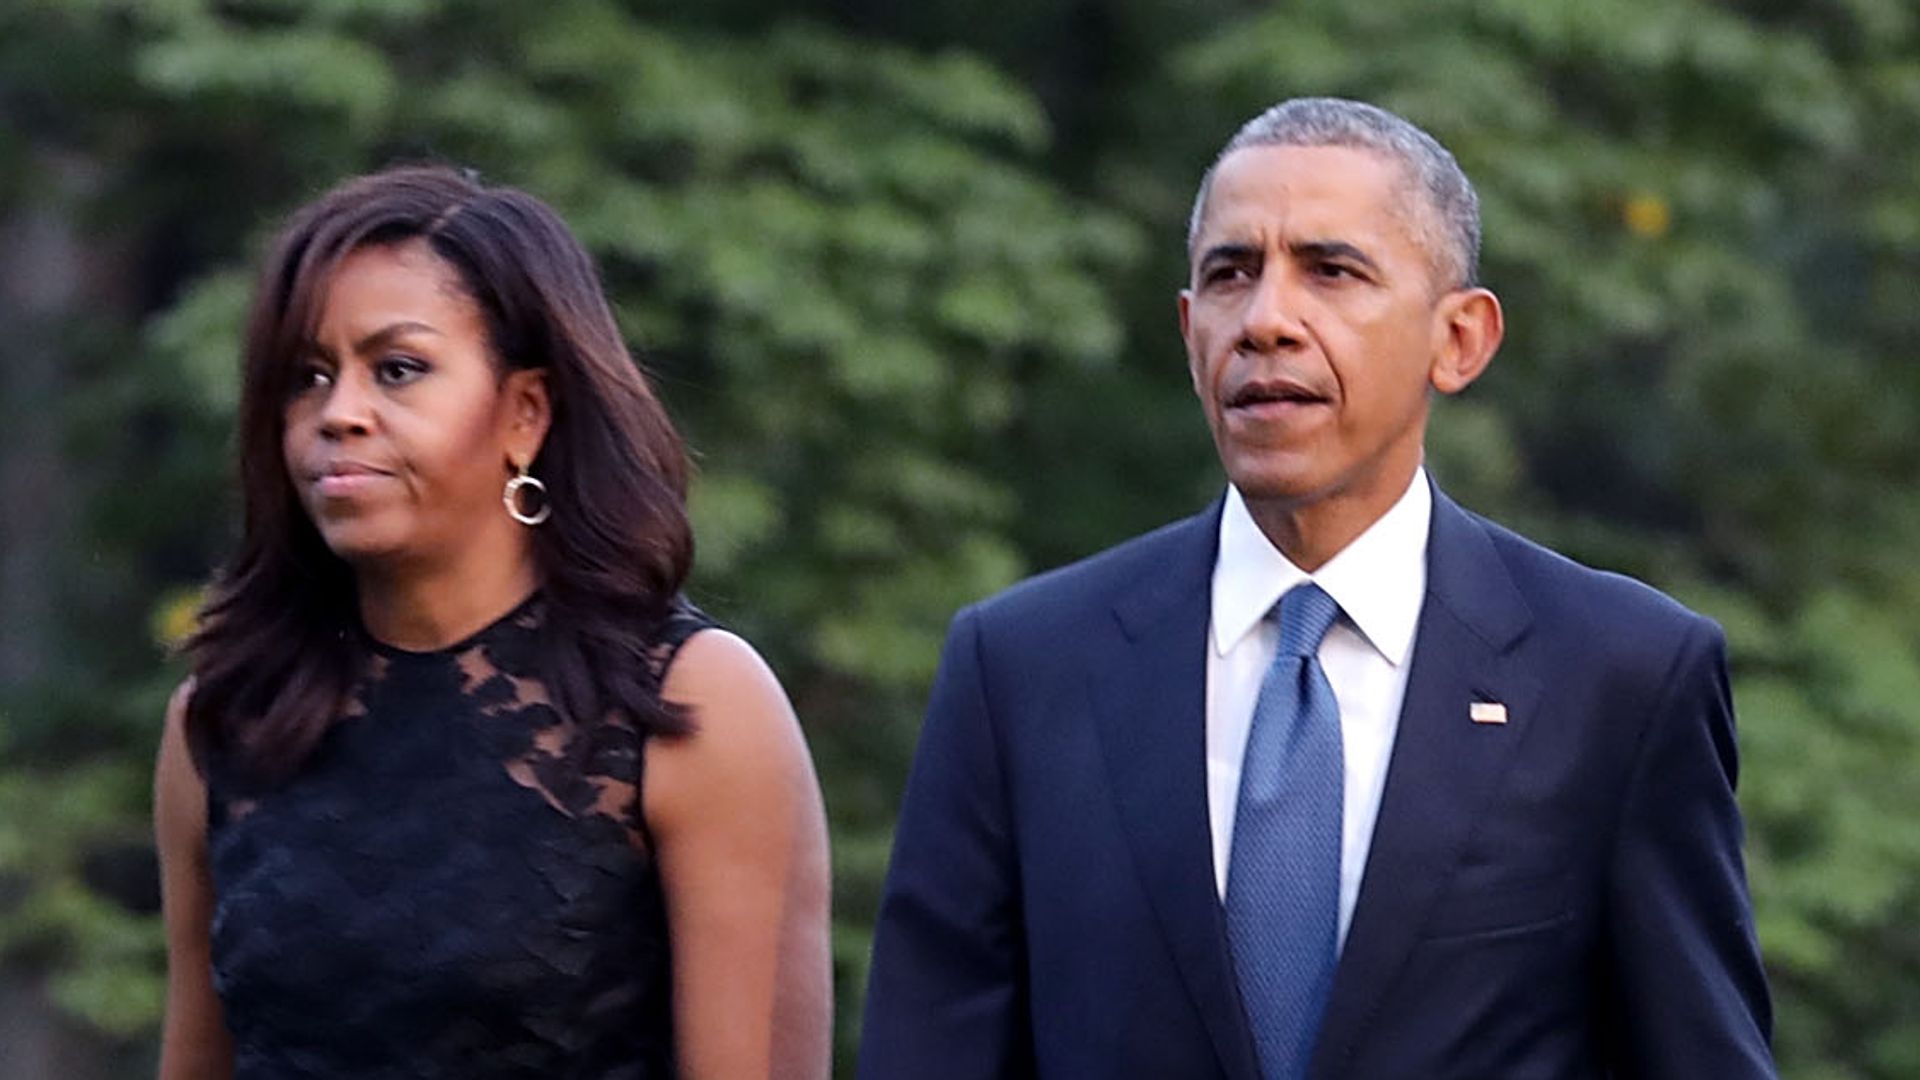 Barack and Michelle Obama share devastating news: 'We're heartbroken'